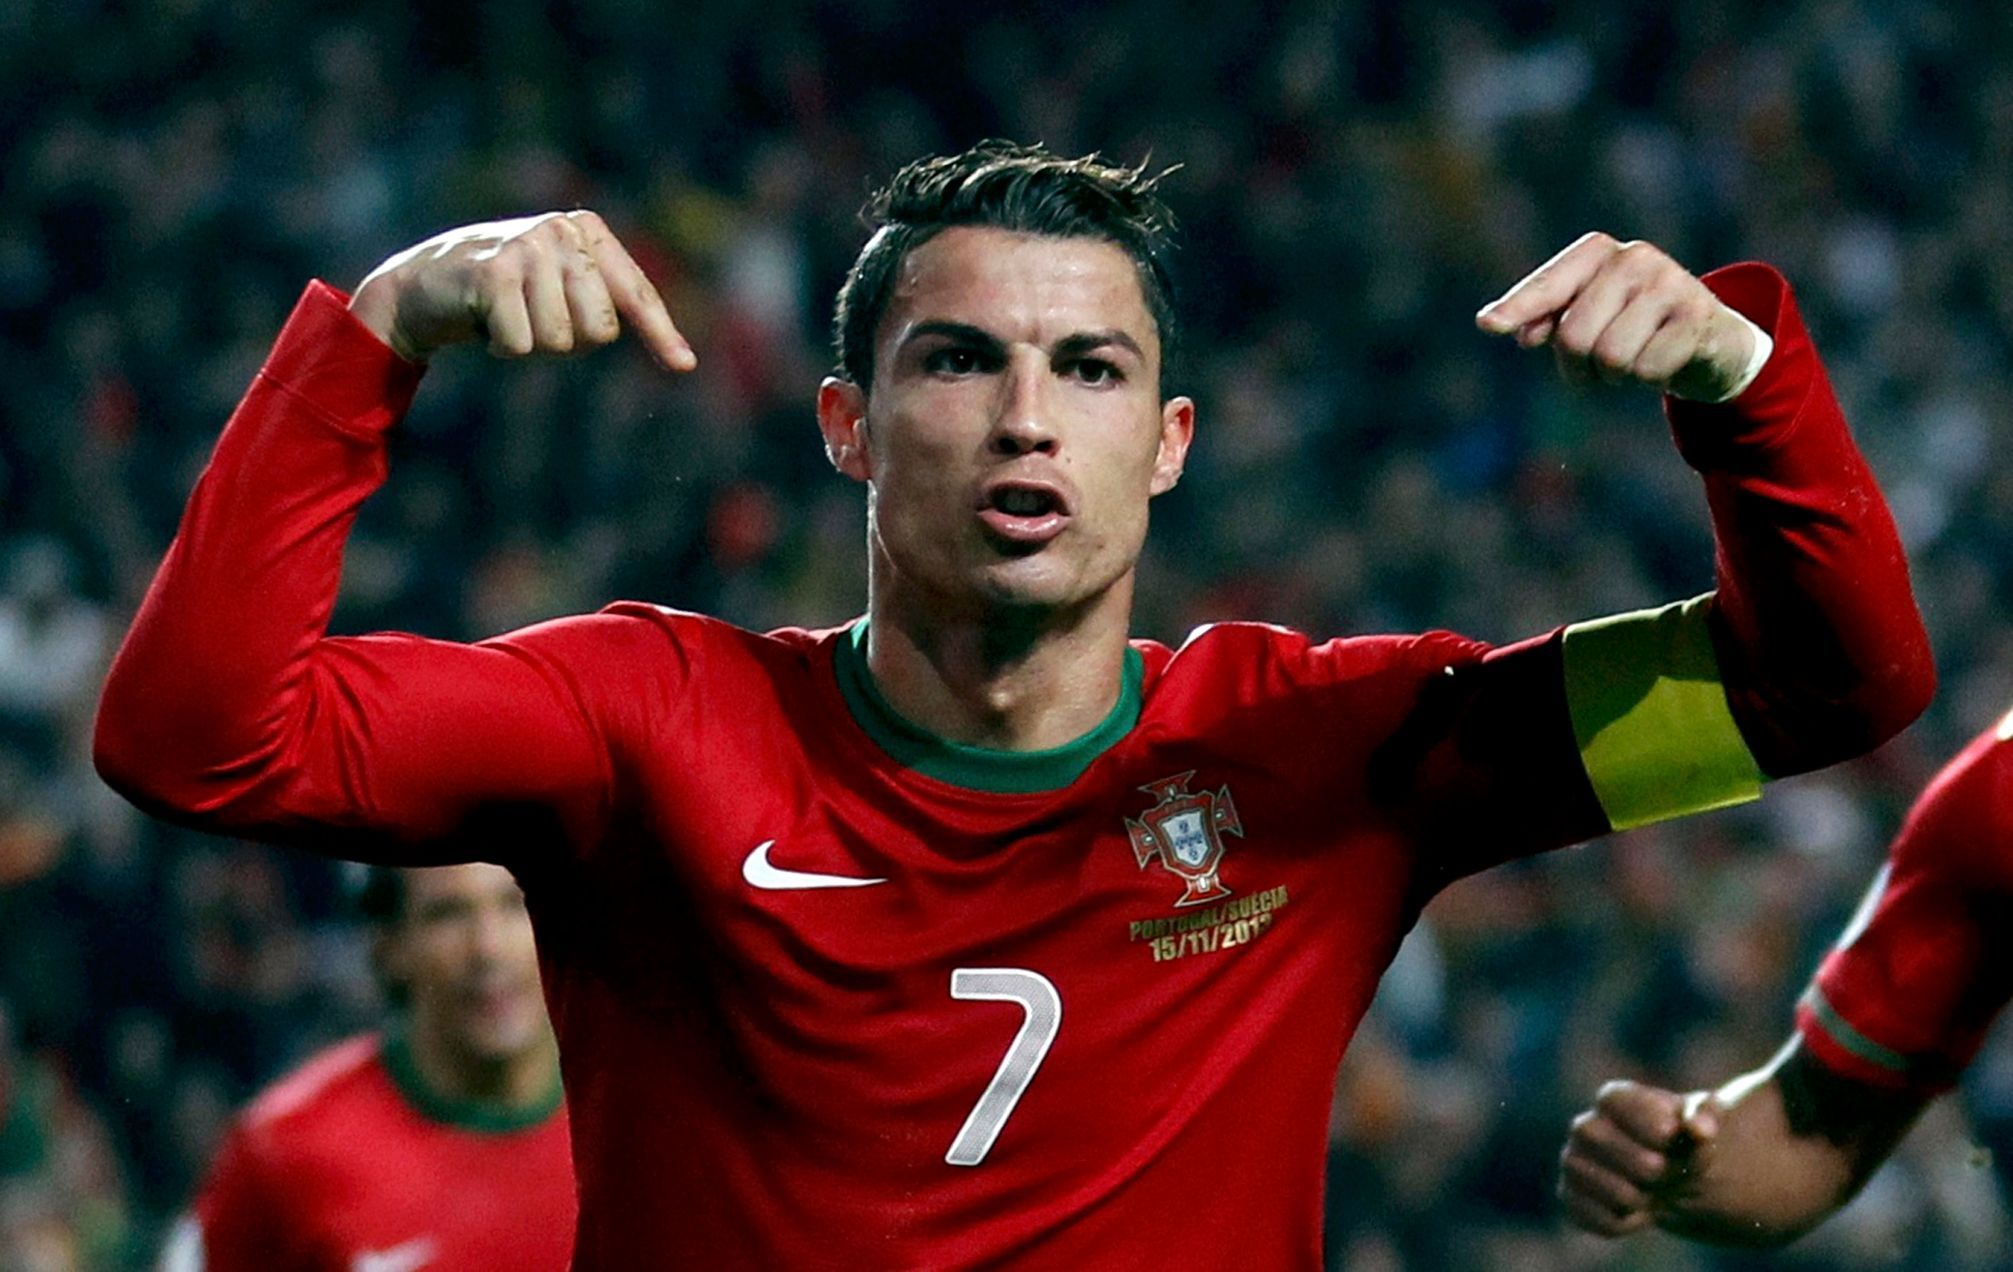 Cristiano Ronaldo slaví branku v baráži proti Švédsku